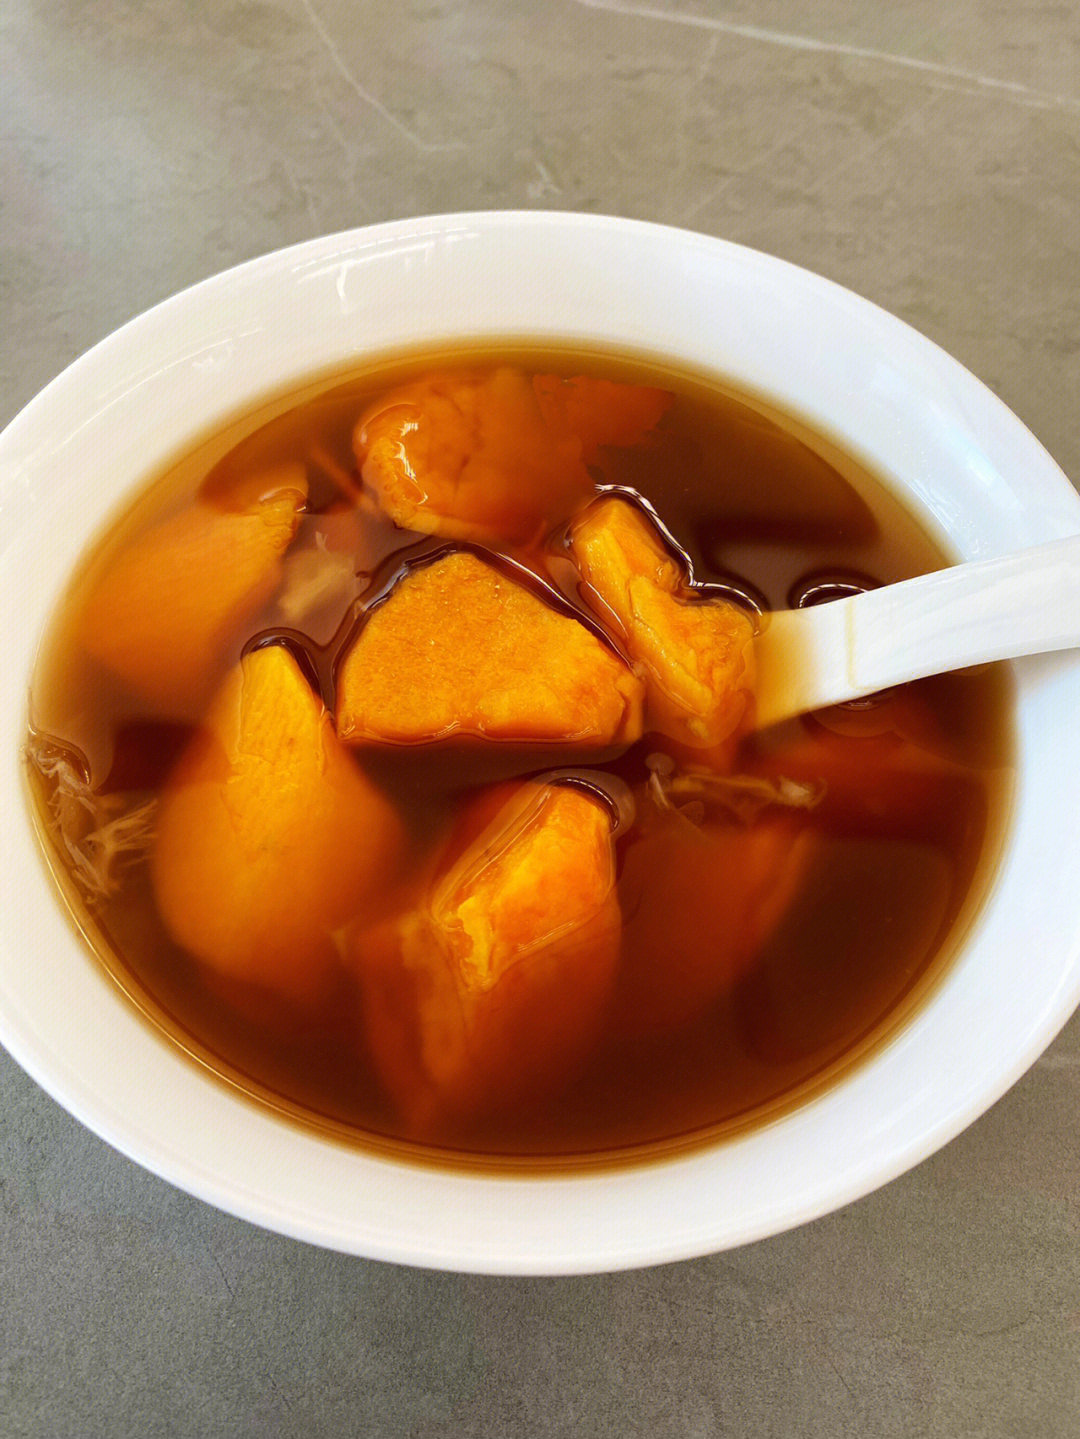 广东红薯糖水图片